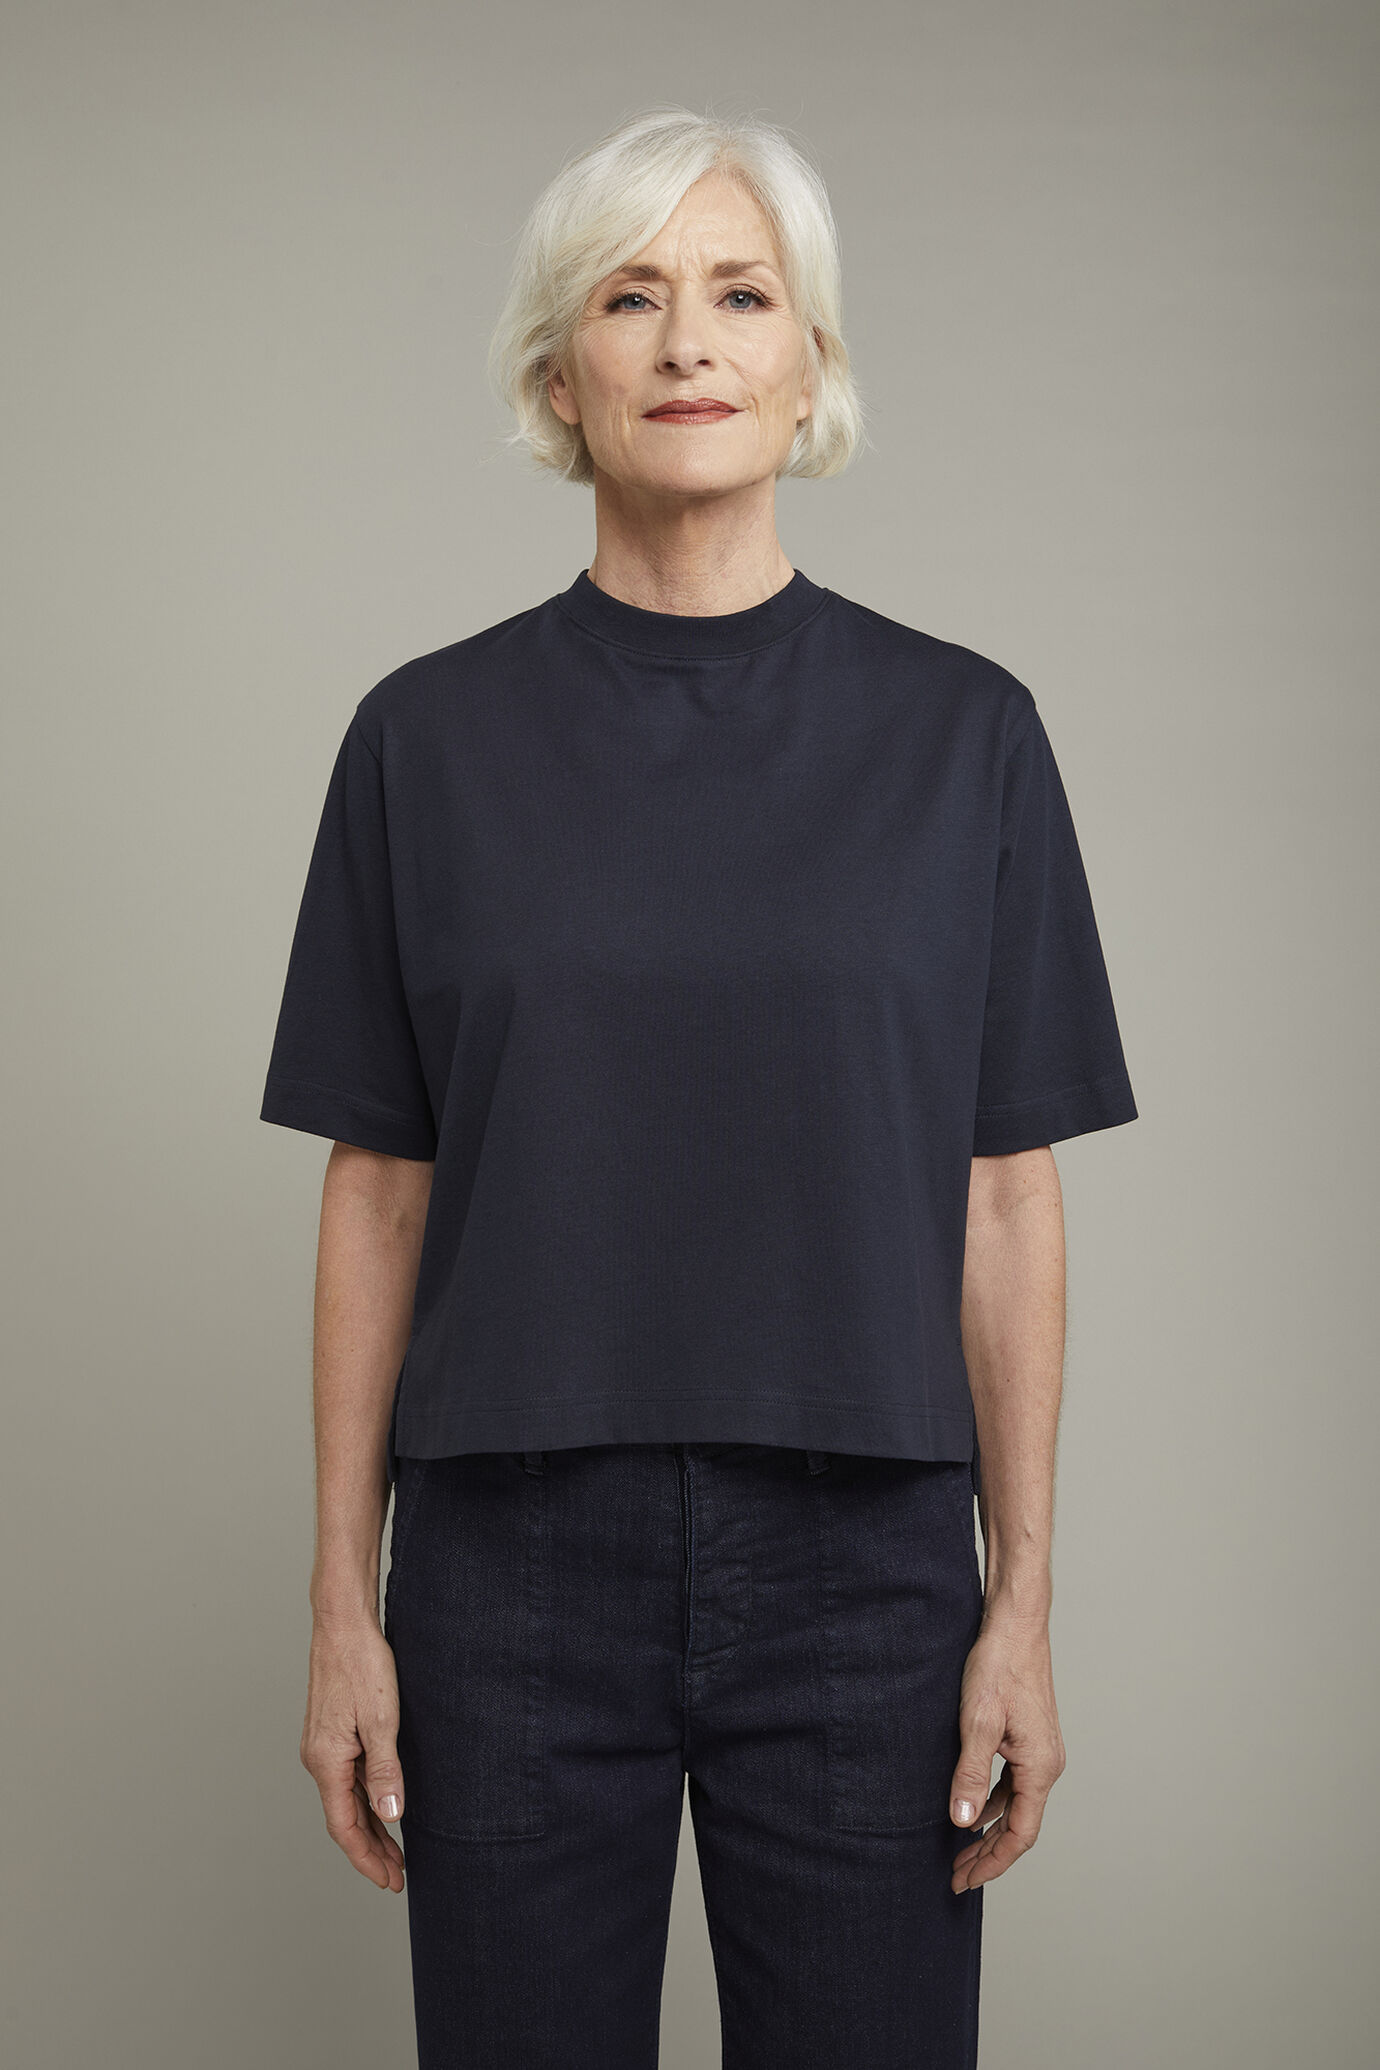 Damen-T-Shirt mit Rundhalsausschnitt aus 100 % Baumwolle in normaler Passform